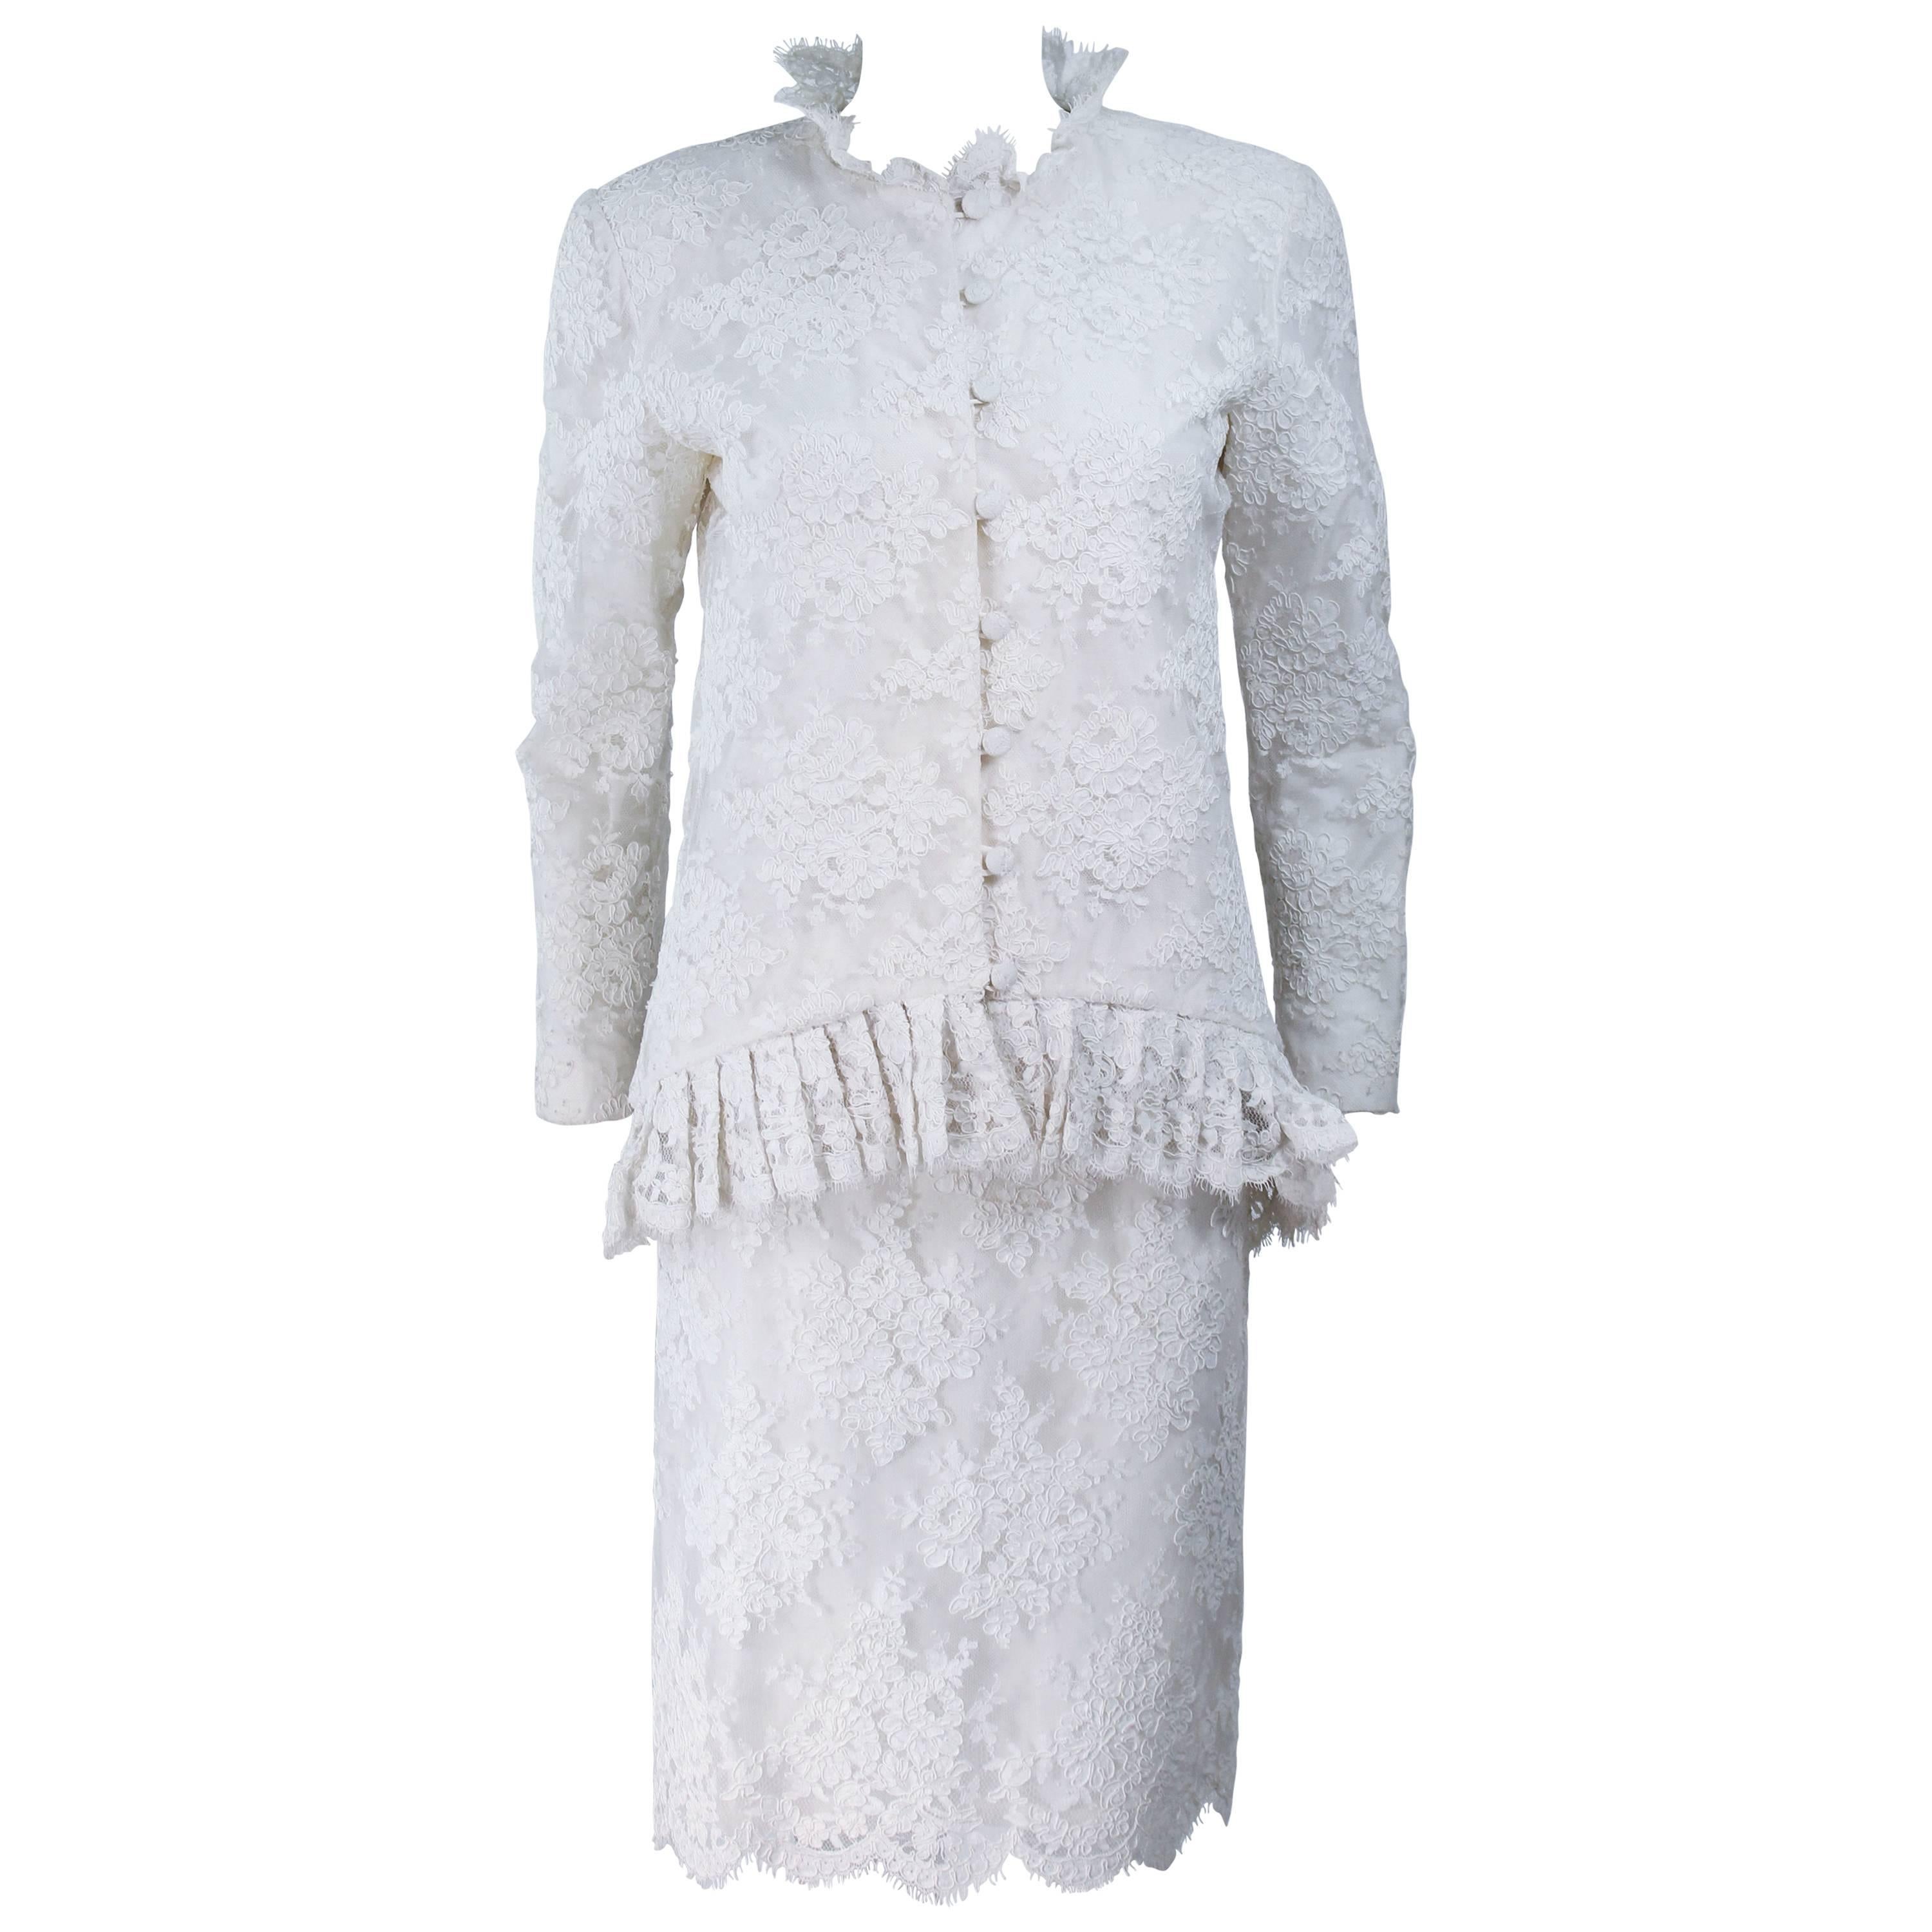 BON CHOIX White Lace Skirt Suit Size 4-6 For Sale